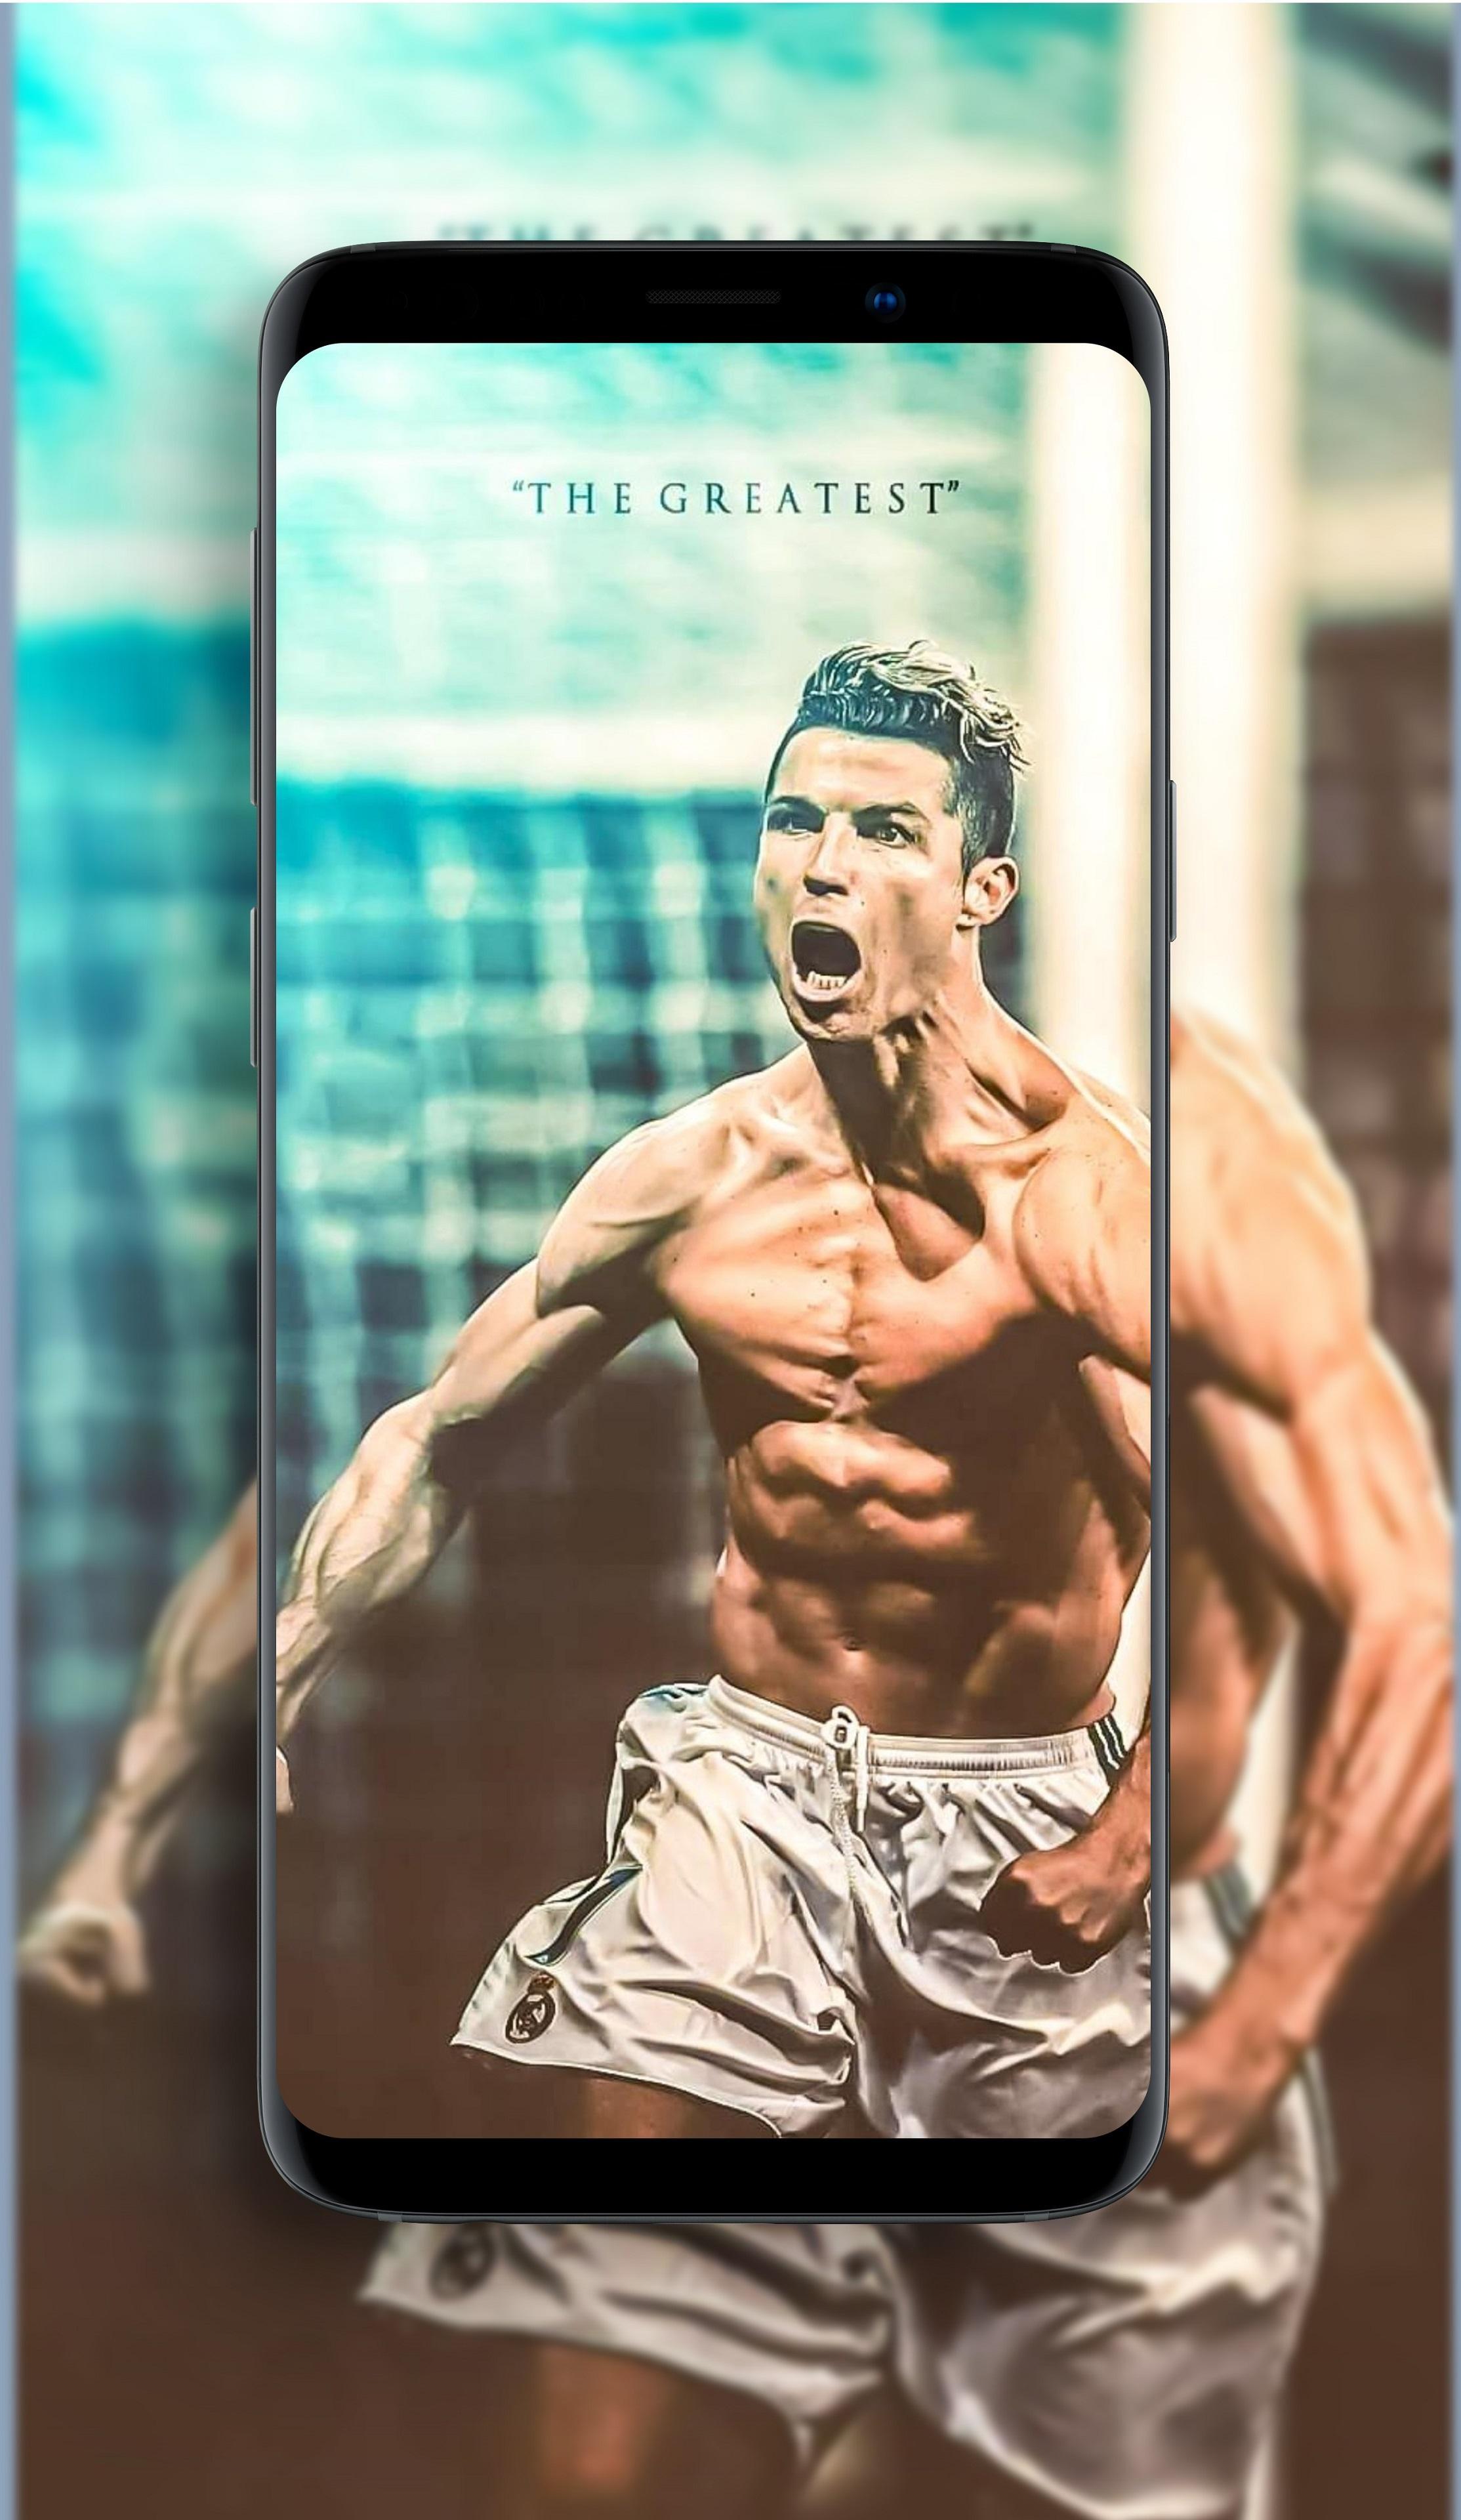 Hãy cùng chiêm ngưỡng sự khéo léo điêu luyện của người đàn ông với kỹ năng bóng đá đỉnh cao Ronaldo trong độ phân giải siêu nét 8K - một trải nghiệm hình ảnh sống động và chân thực nhất cho người xem!